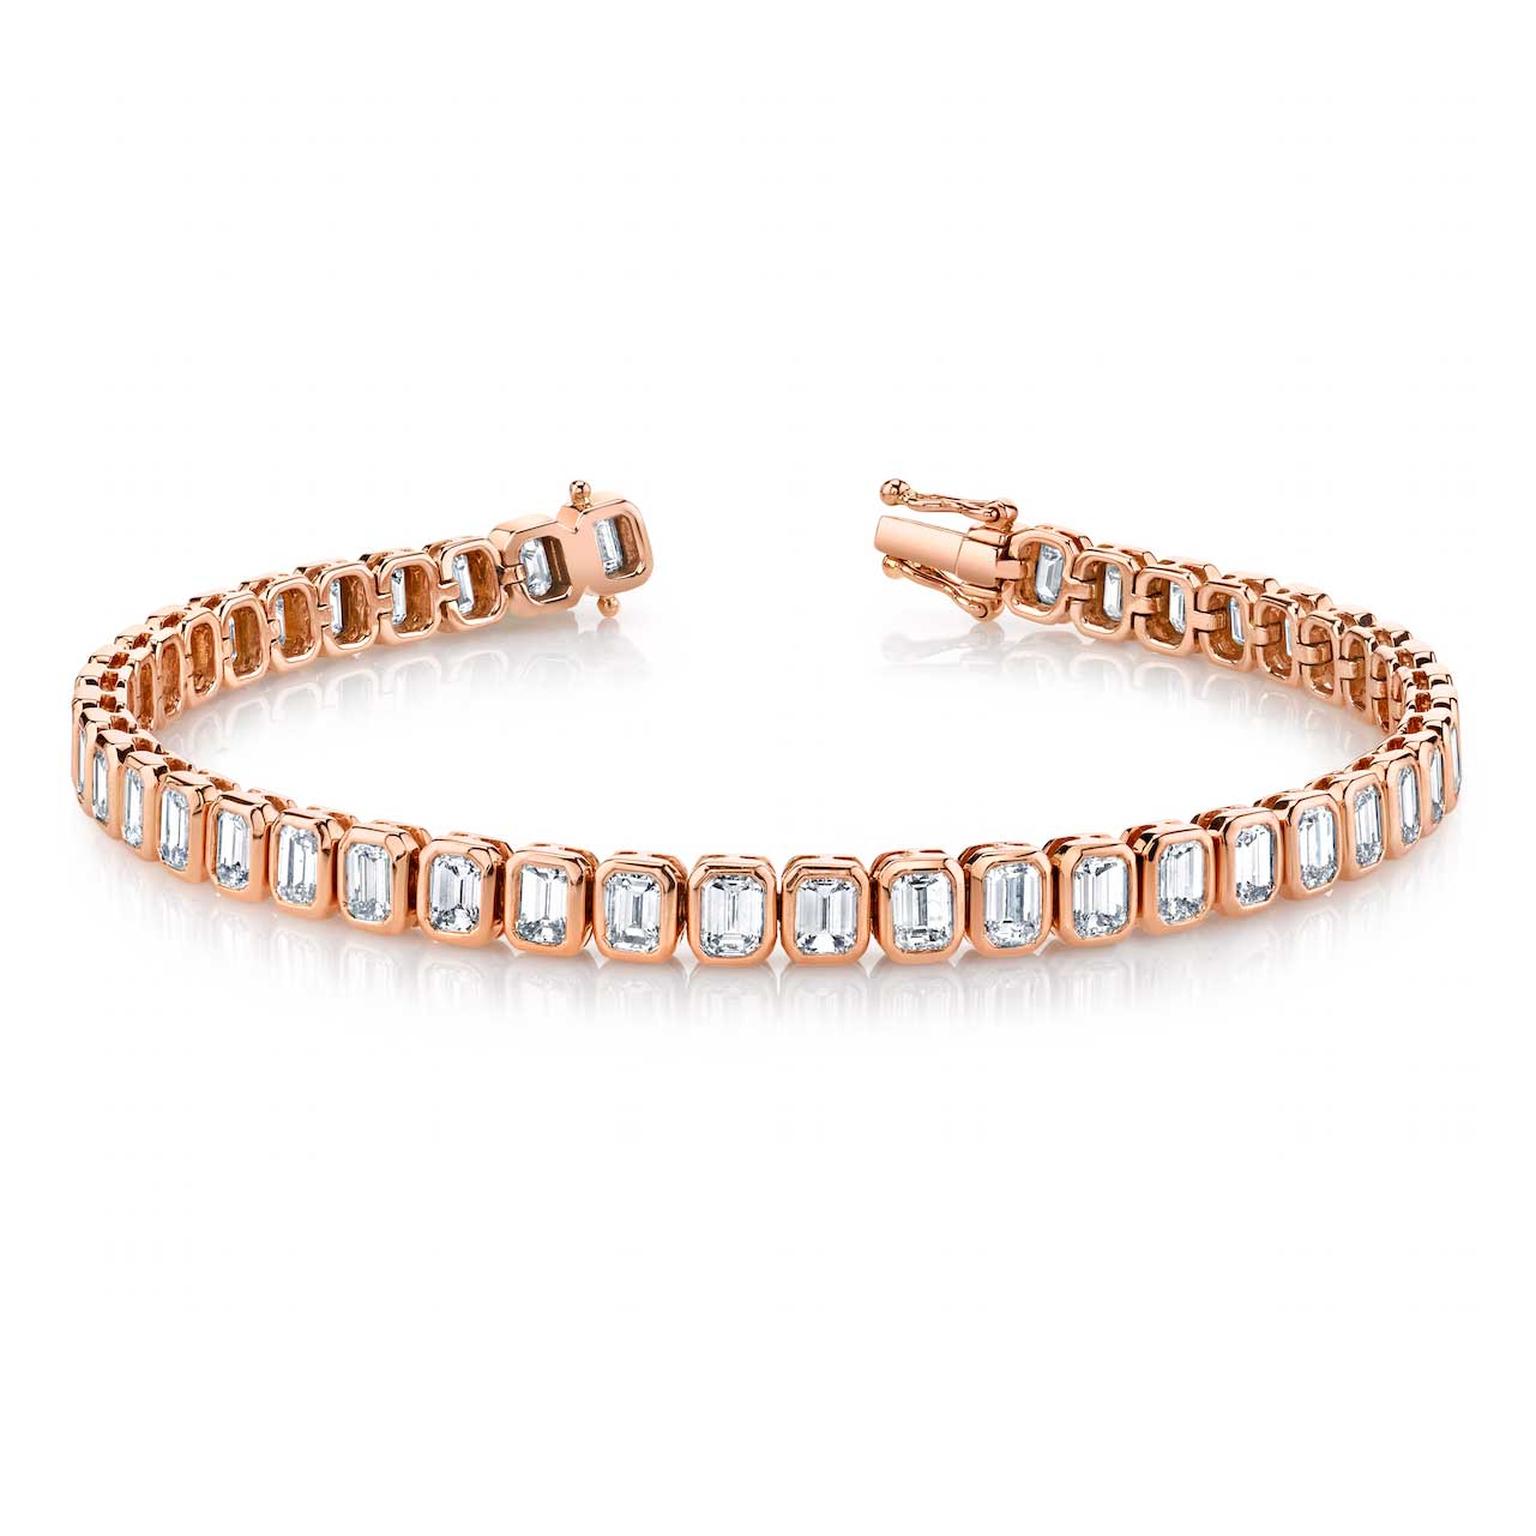 Anita Ko diamond tennis bracelet in rose gold